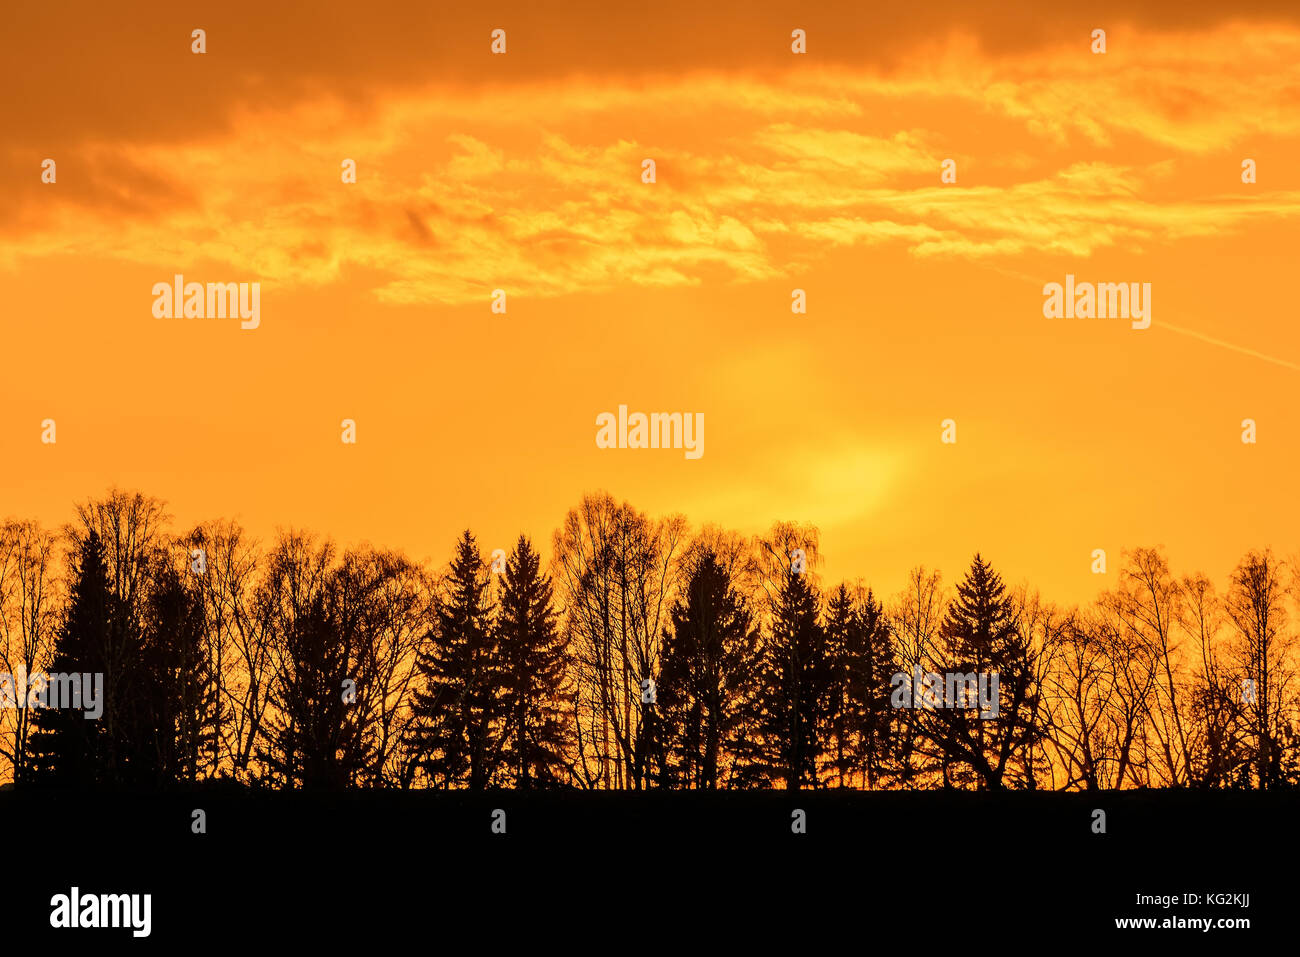 Colorato sfondo astratto con contorni neri di alberi contro uno sfondo di fiery orange sky e nuvole al tramonto Foto Stock